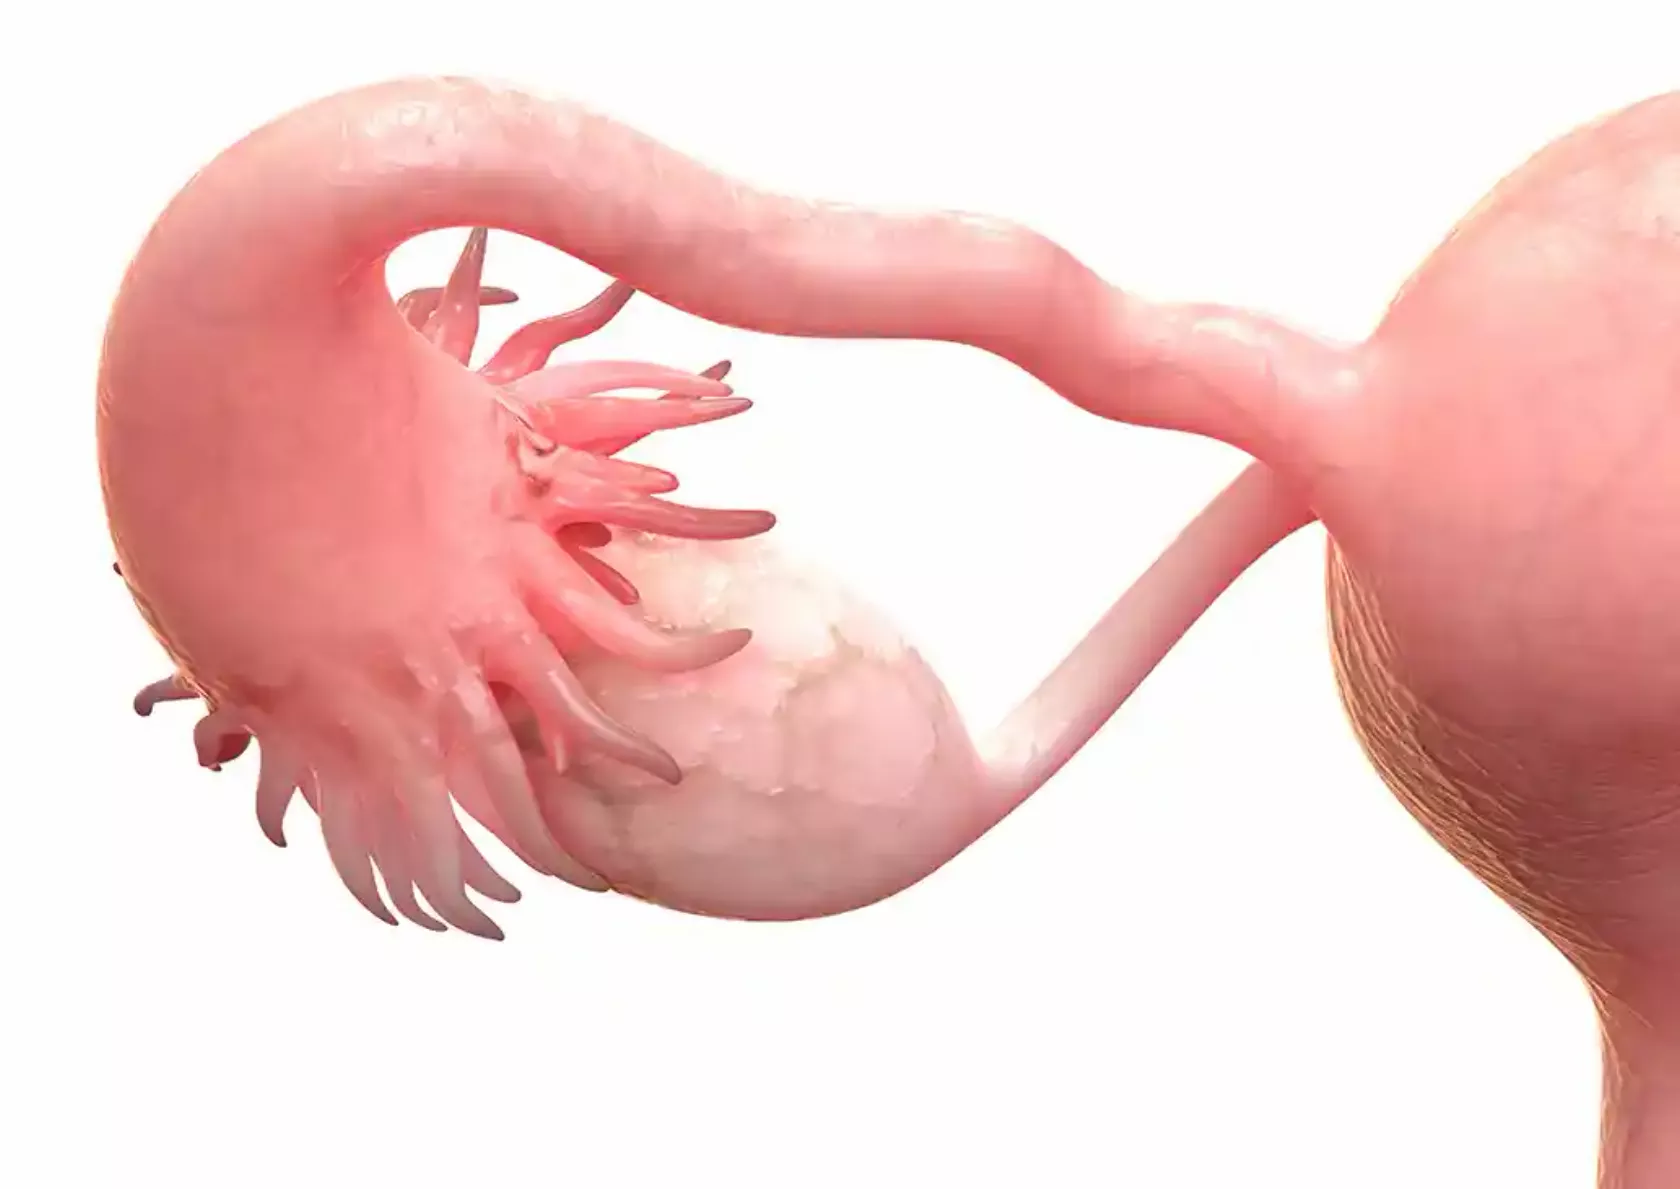 Anatomisches Modell: Ovar mit Adnex